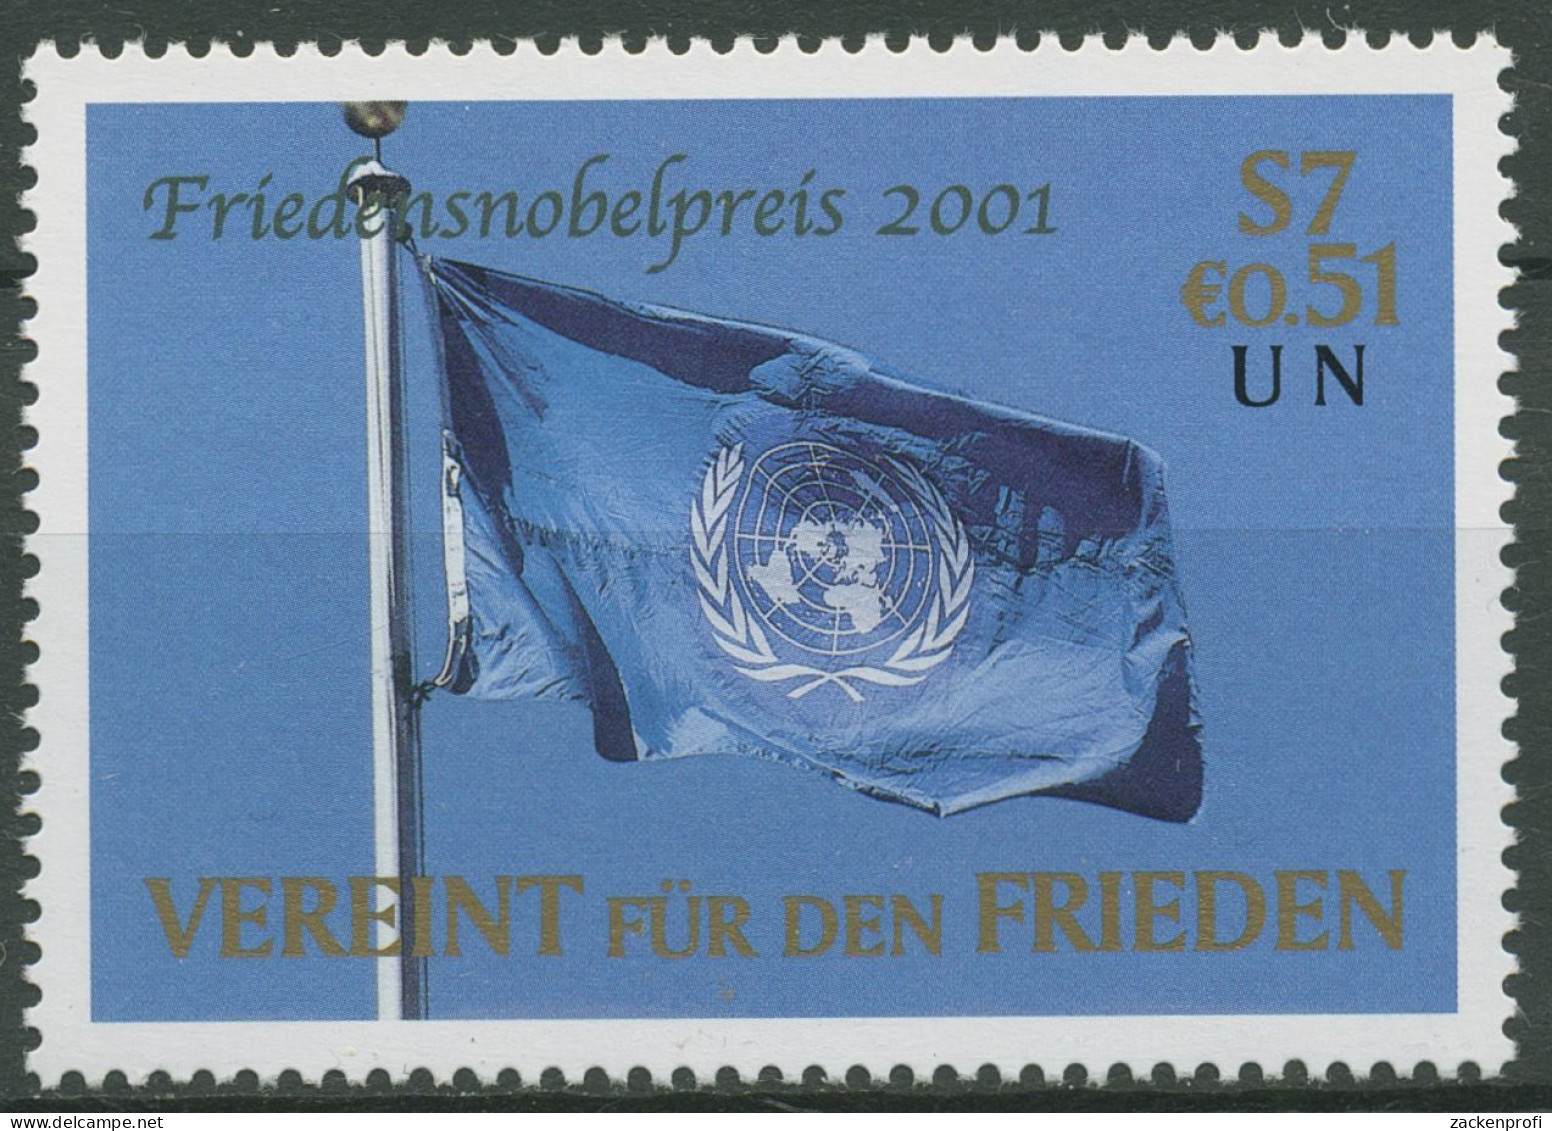 UNO Wien 2001 Friedensnobelpreis Kofi Annan Flagge 350 Postfrisch - Nuevos